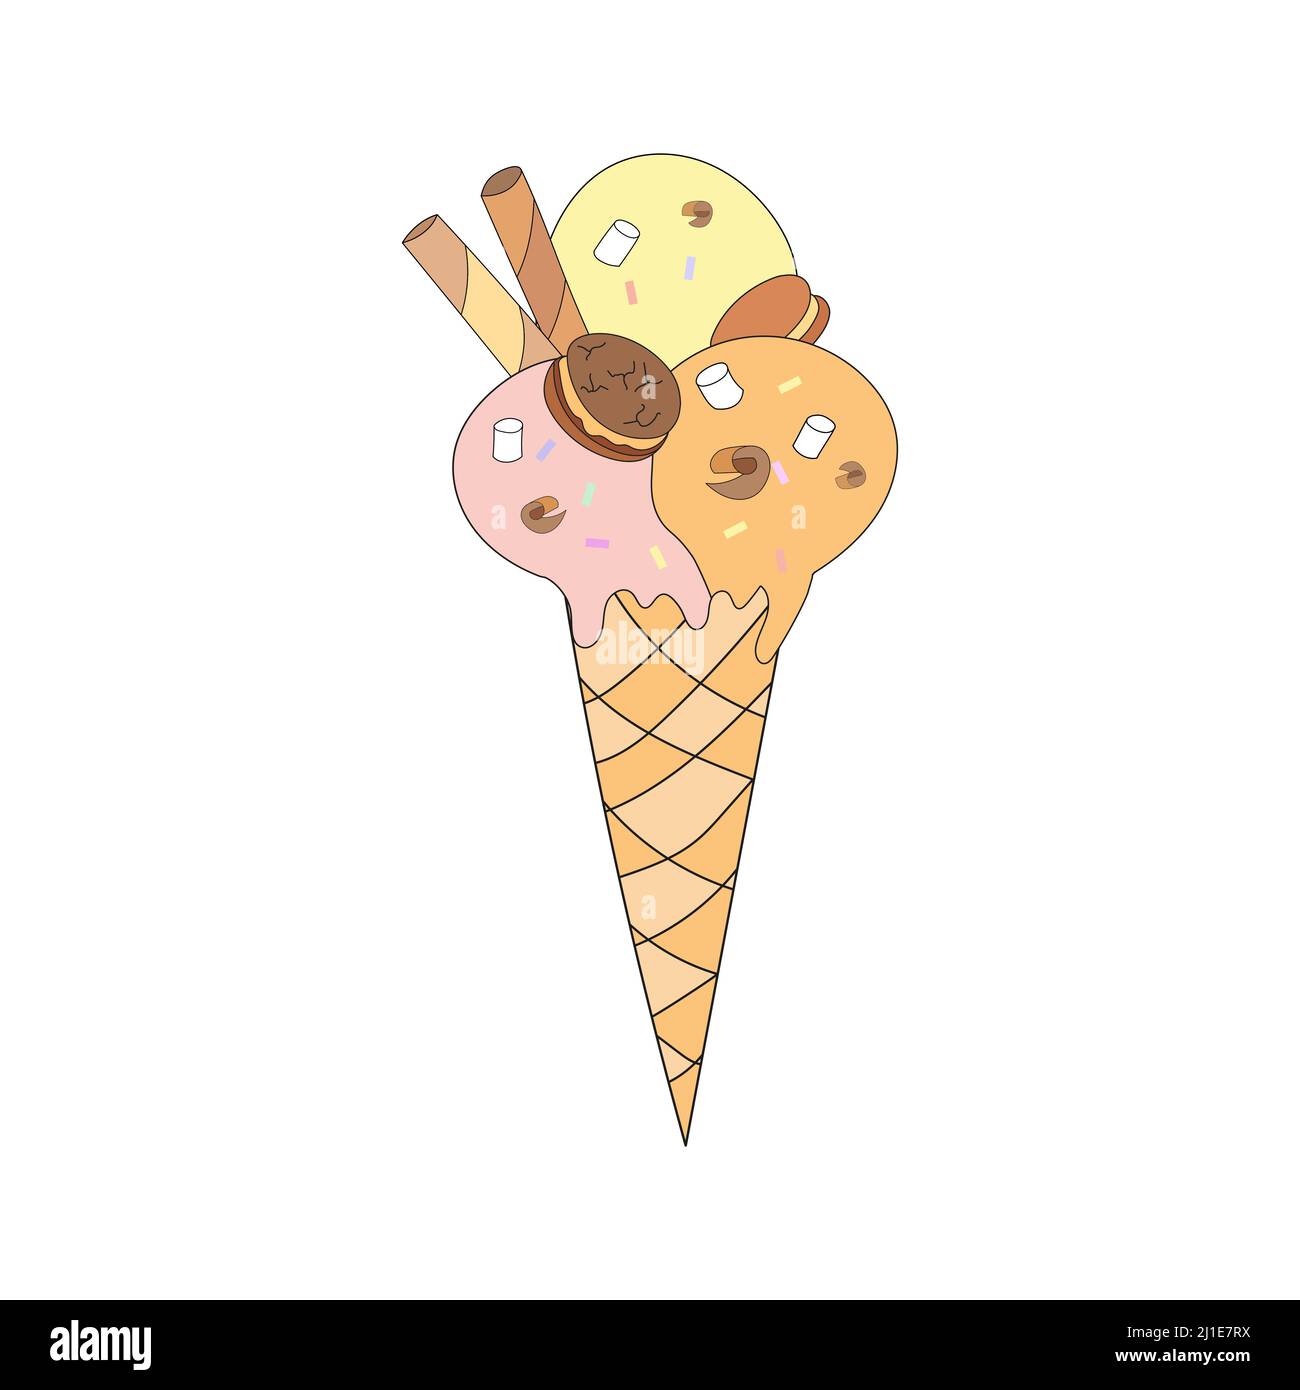 Eiskonus mit Choco-Chip-Cookies, Waffelrollen und Marschwalbe. Vektorgrafik im Doodle-Stil. Stock Vektor